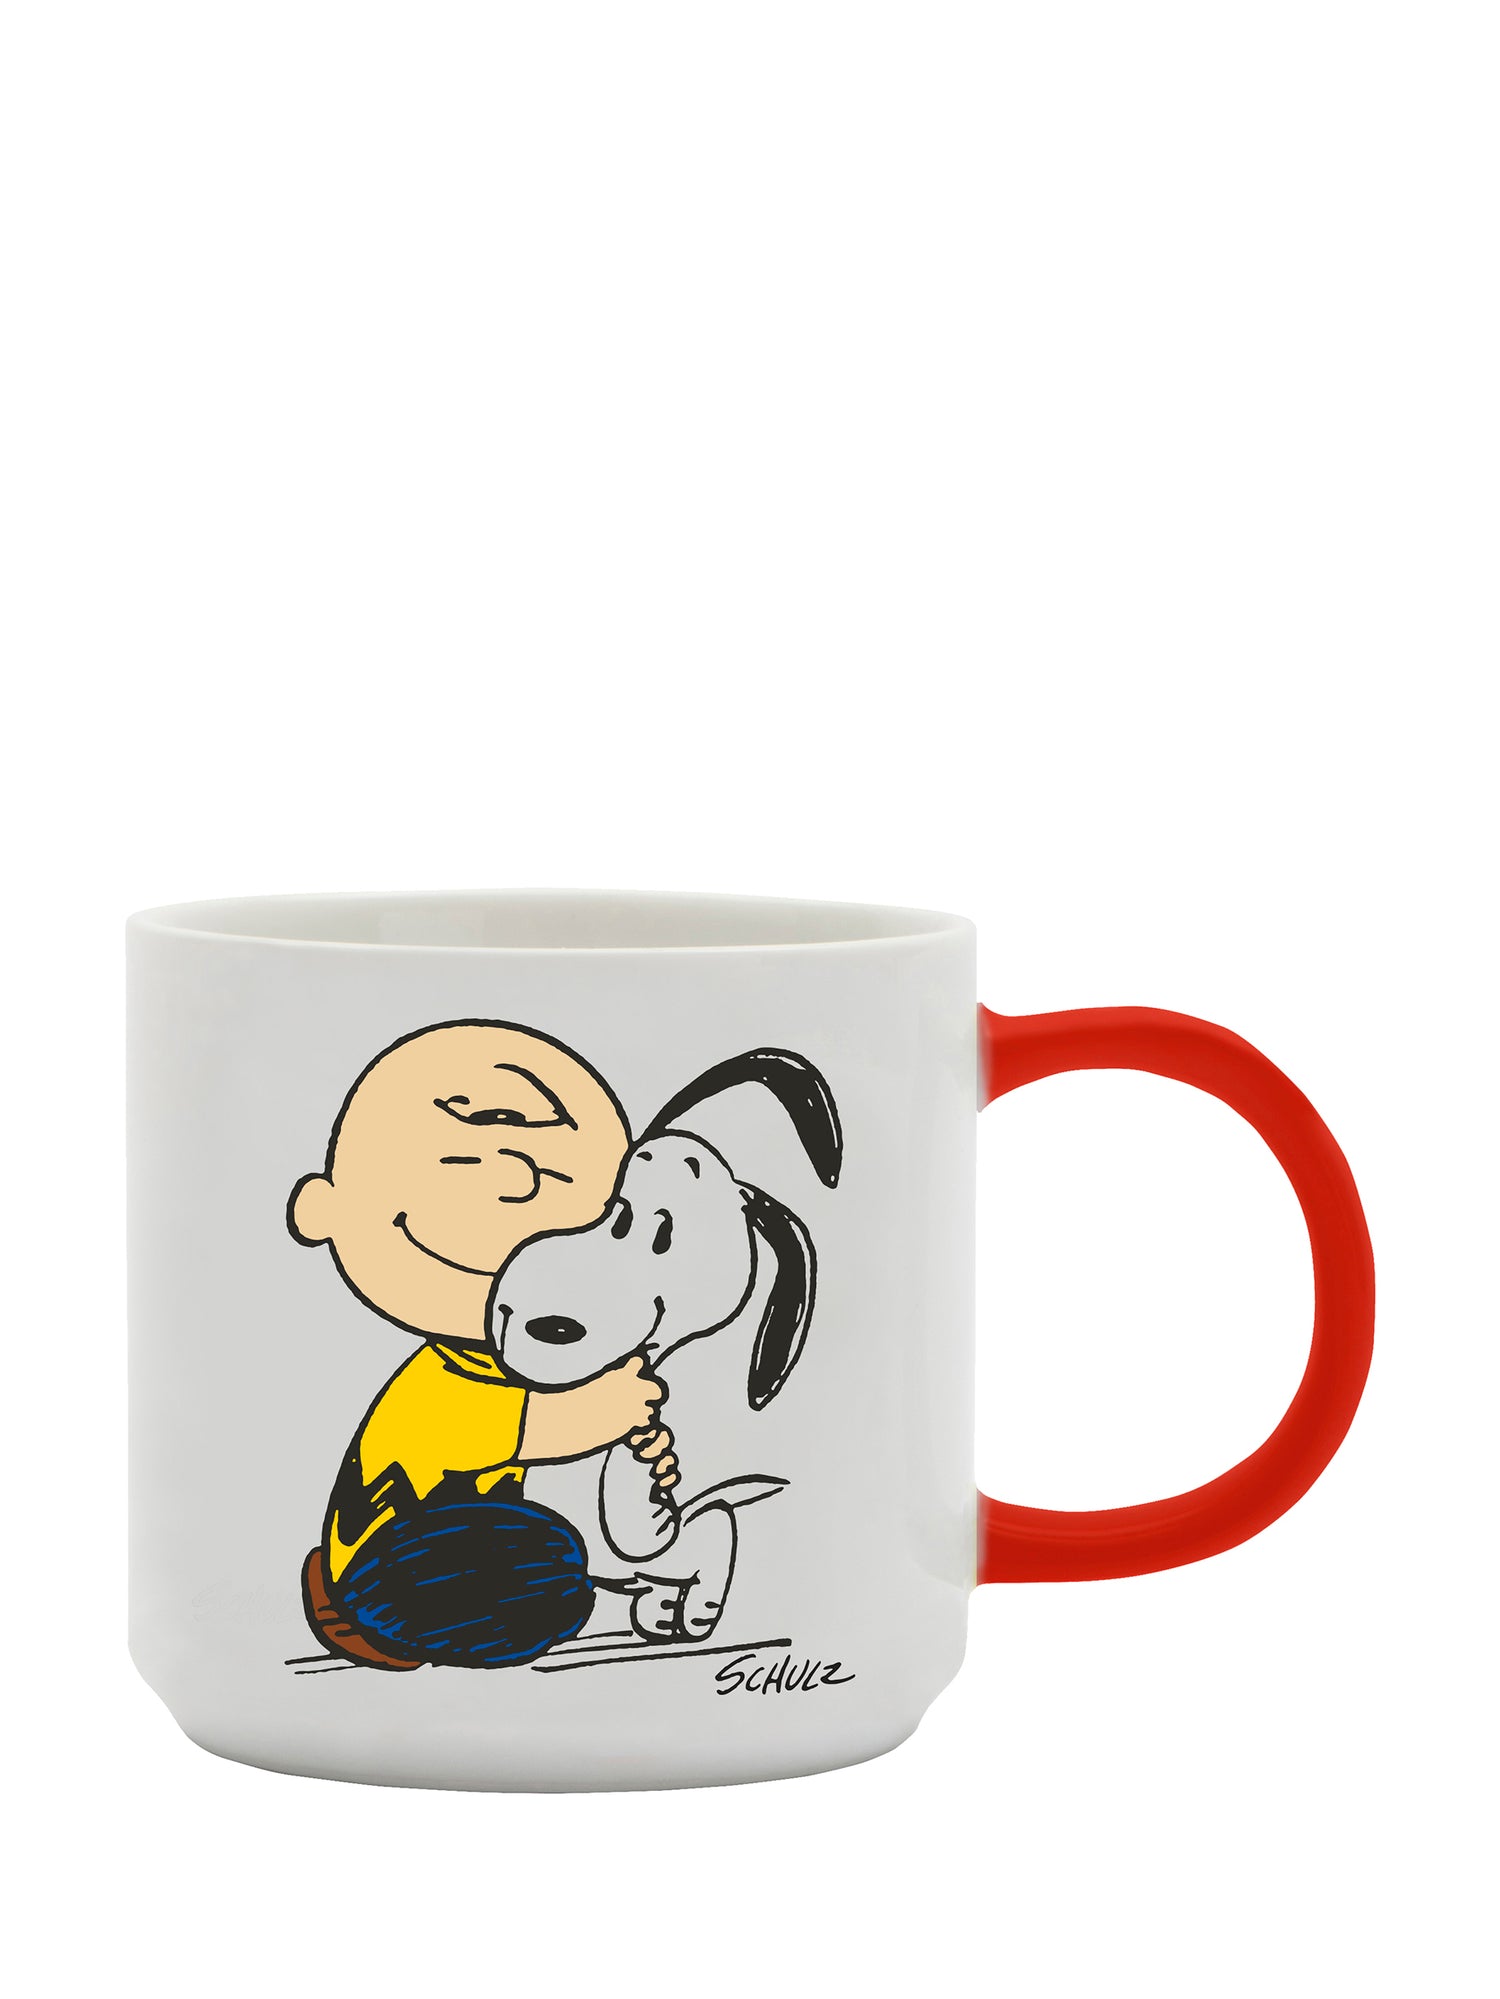 Regalos Snoopy - Gracias Amiga Maeser ❤️